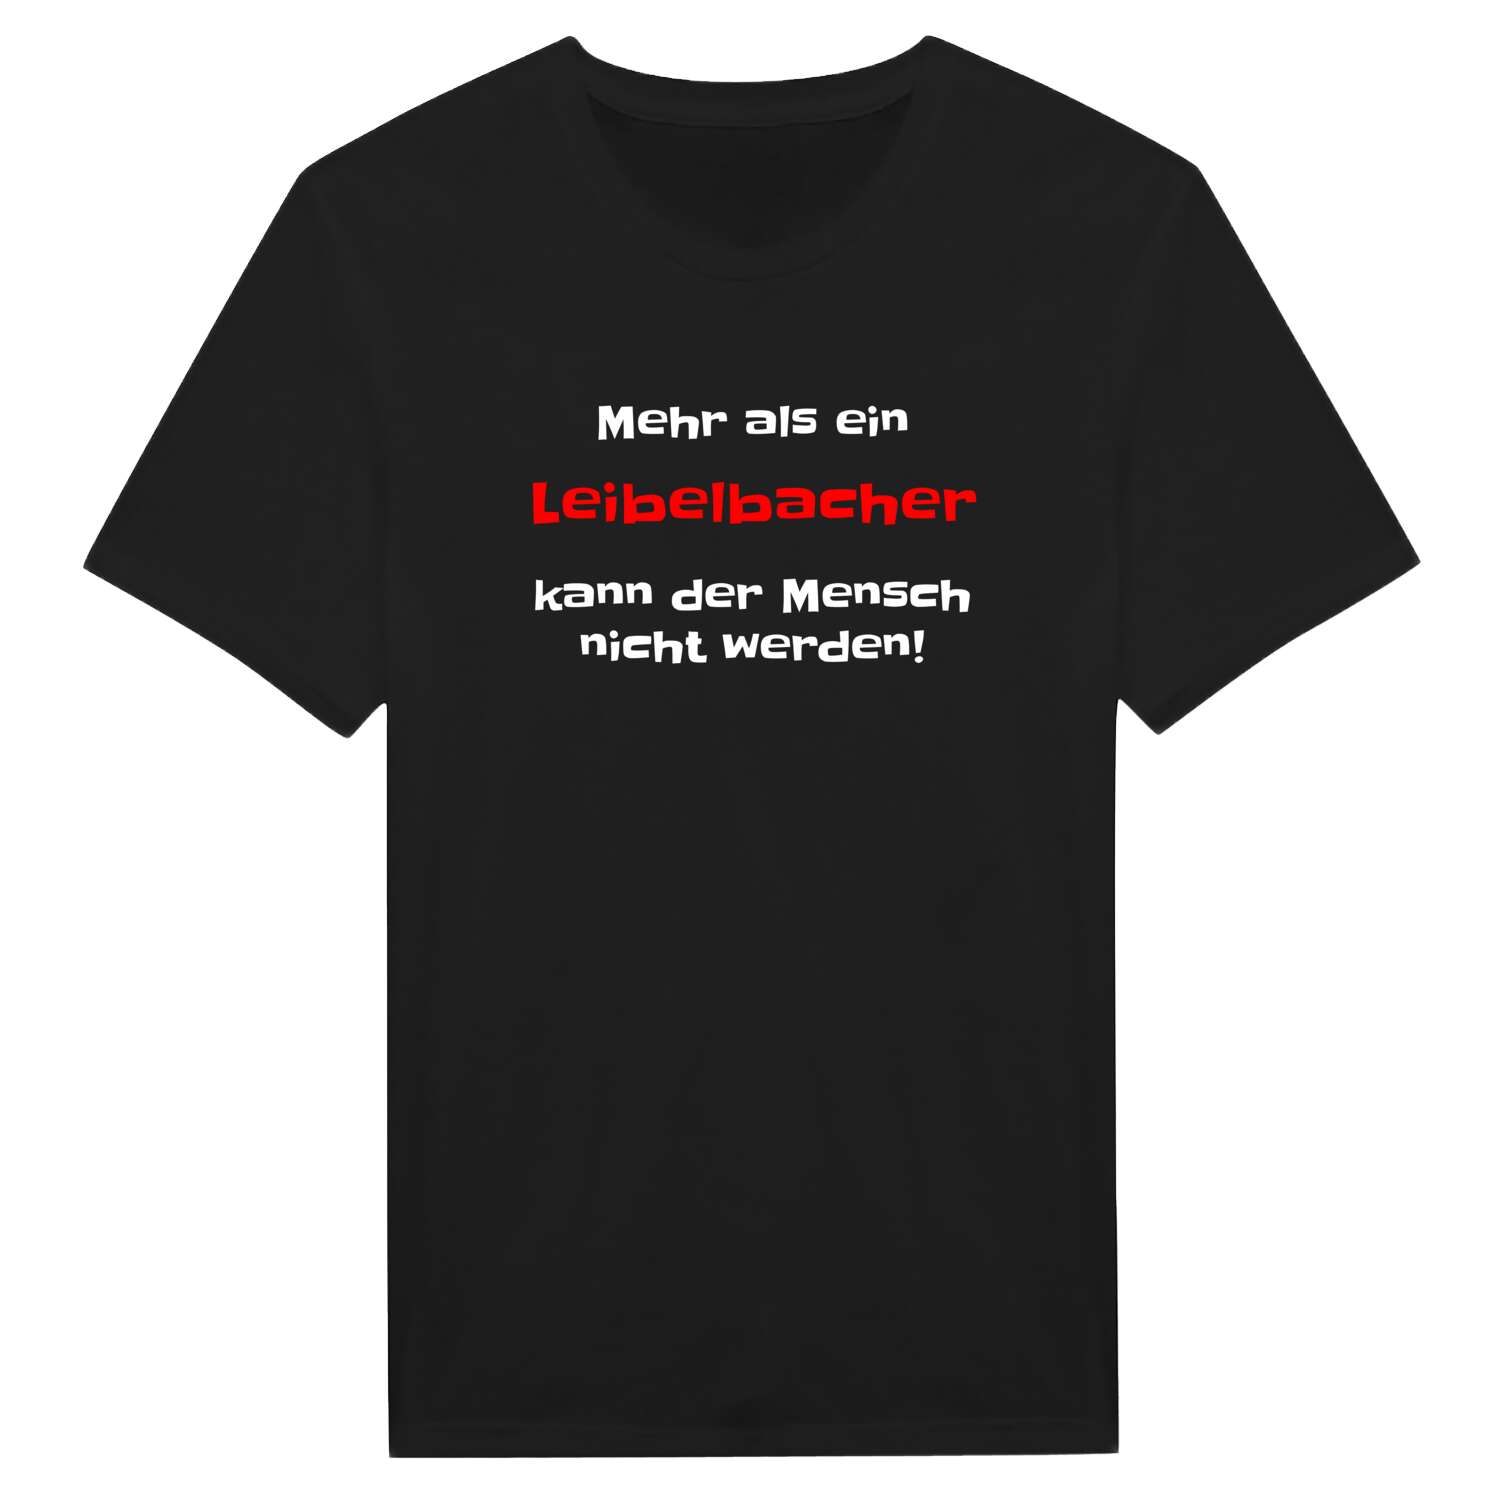 Leibelbach T-Shirt »Mehr als ein«